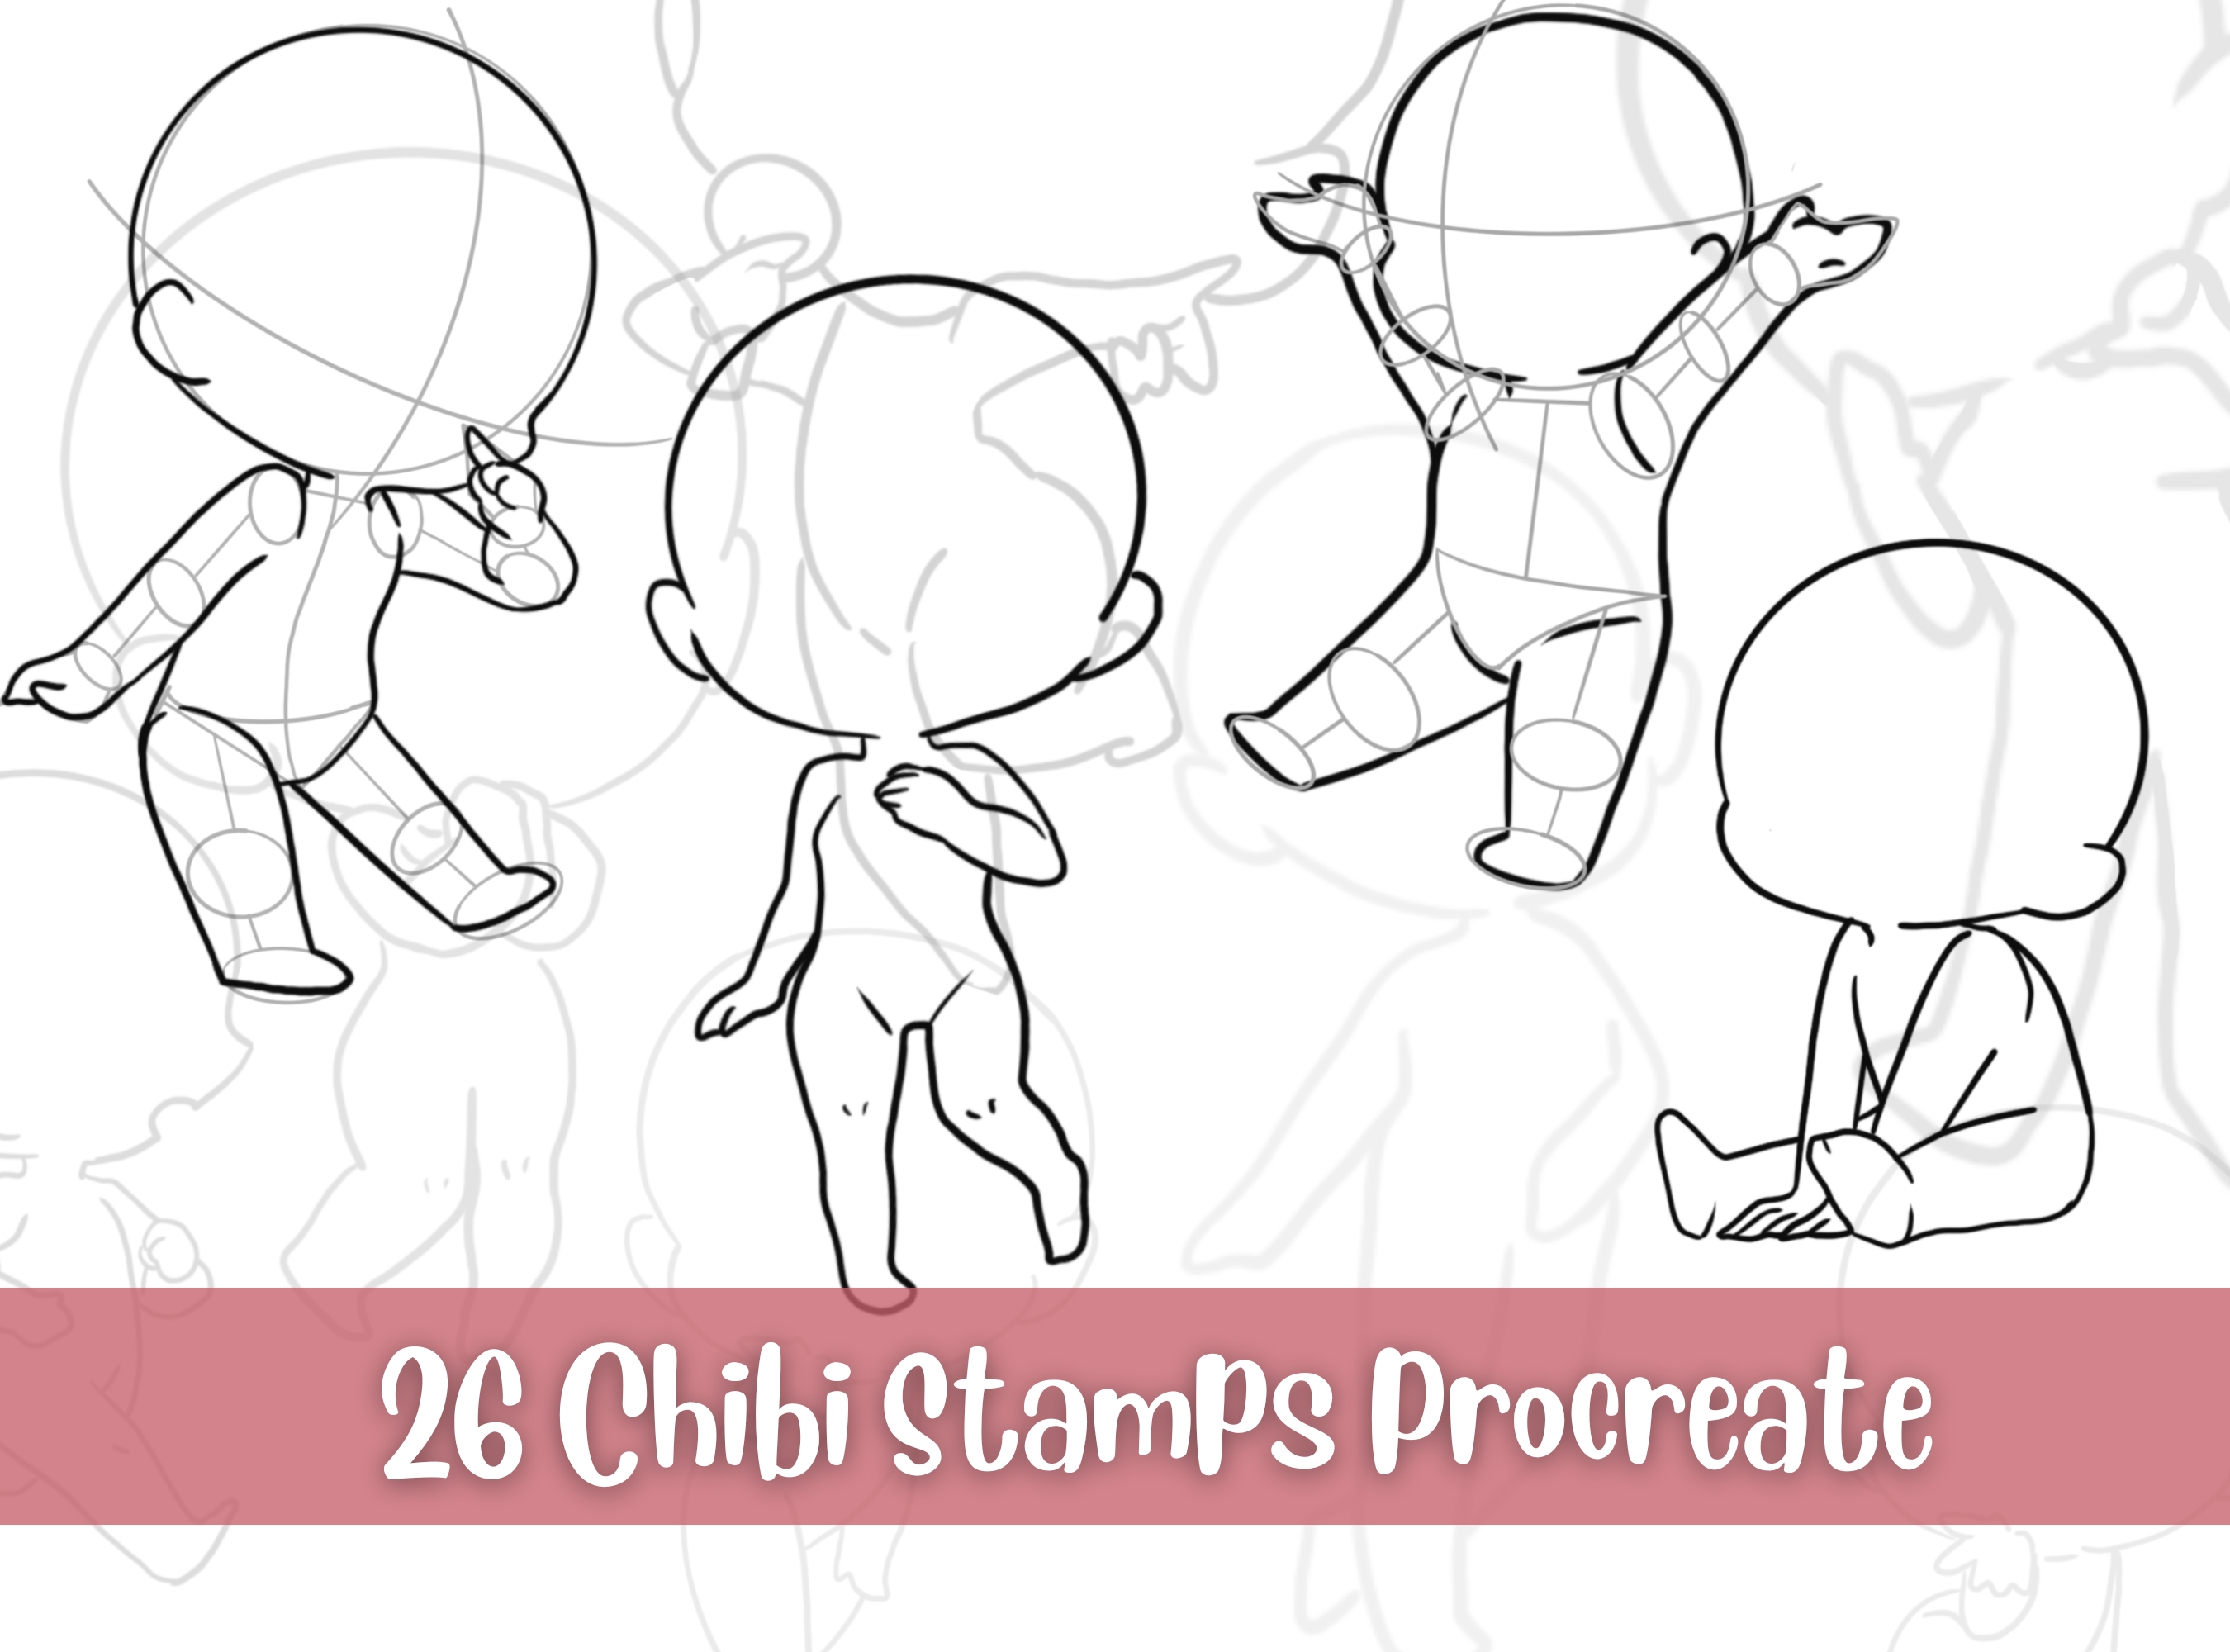 Procreate Chibi Accessories Stamp 92 Kawaii Accessory Chibi